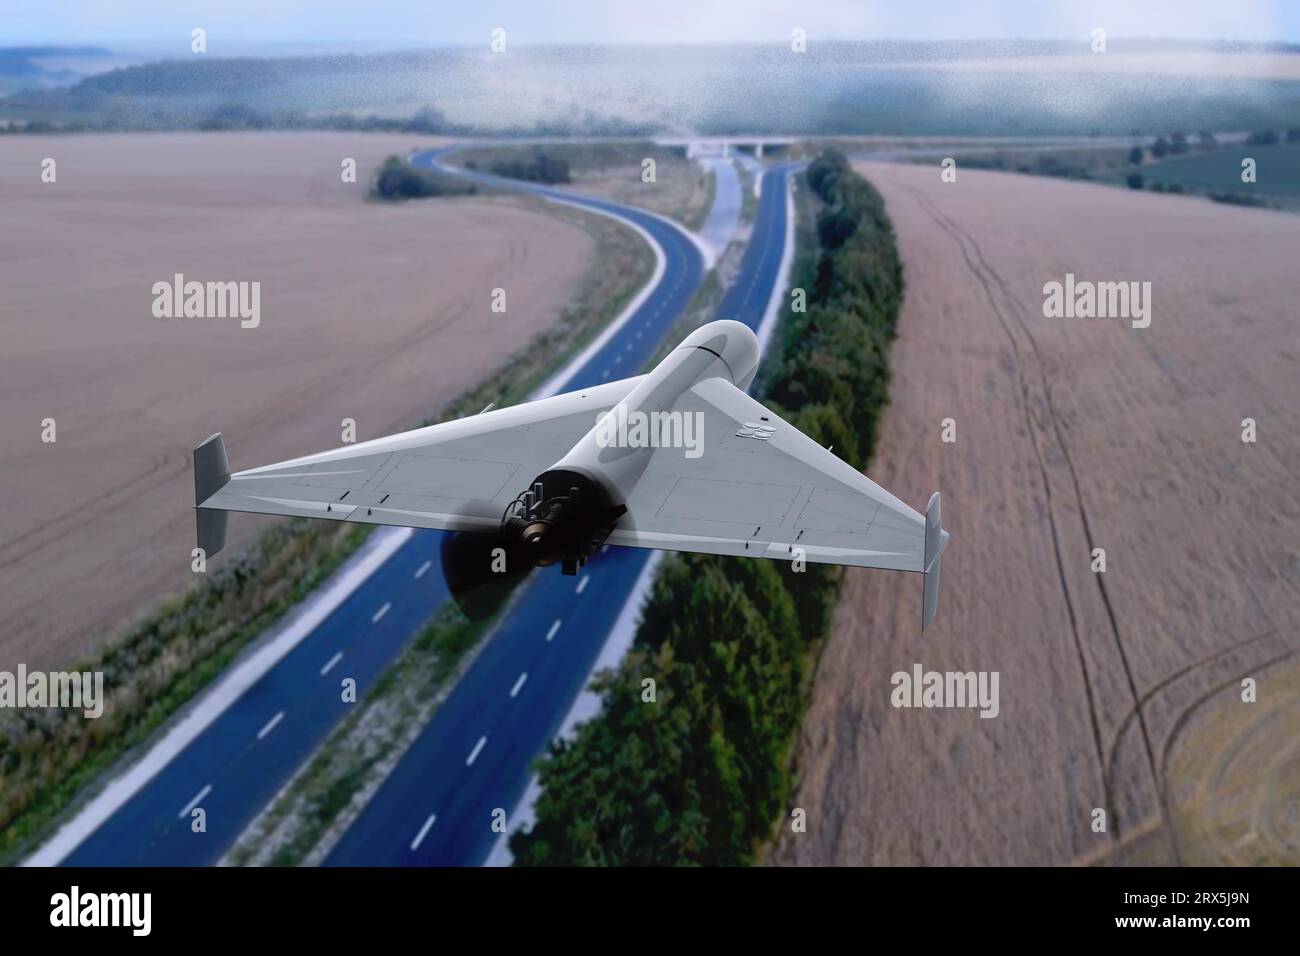 Drone de combat volant au-dessus de l'autoroute, paysage de campagne, vue de dessus, rendu 3D. Concept : guerre en Ukraine, attaque de drone russe. Banque D'Images